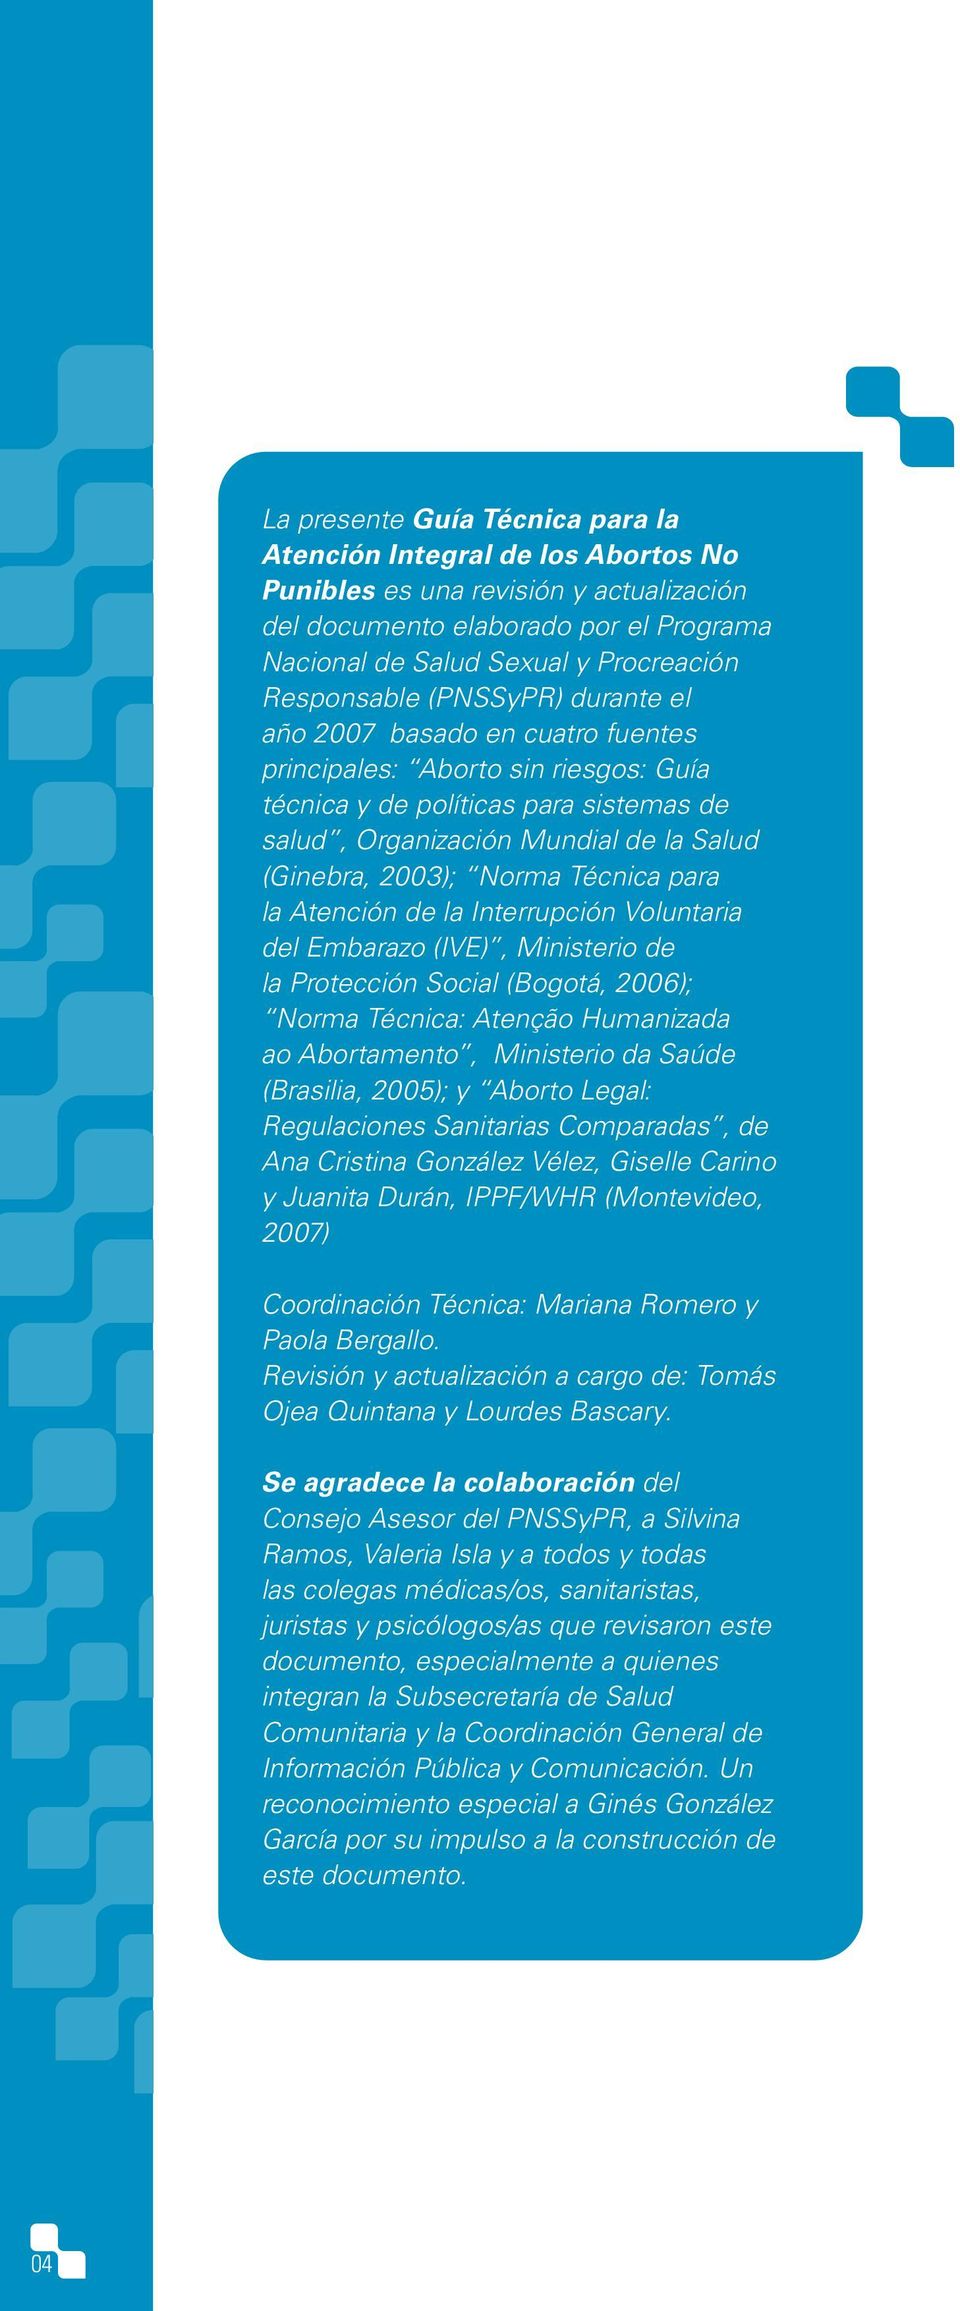 2003); Norma Técnica para la Atención de la Interrupción Voluntaria del Embarazo (IVE), Ministerio de la Protección Social (Bogotá, 2006); Norma Técnica: Atenção Humanizada ao Abortamento, Ministerio